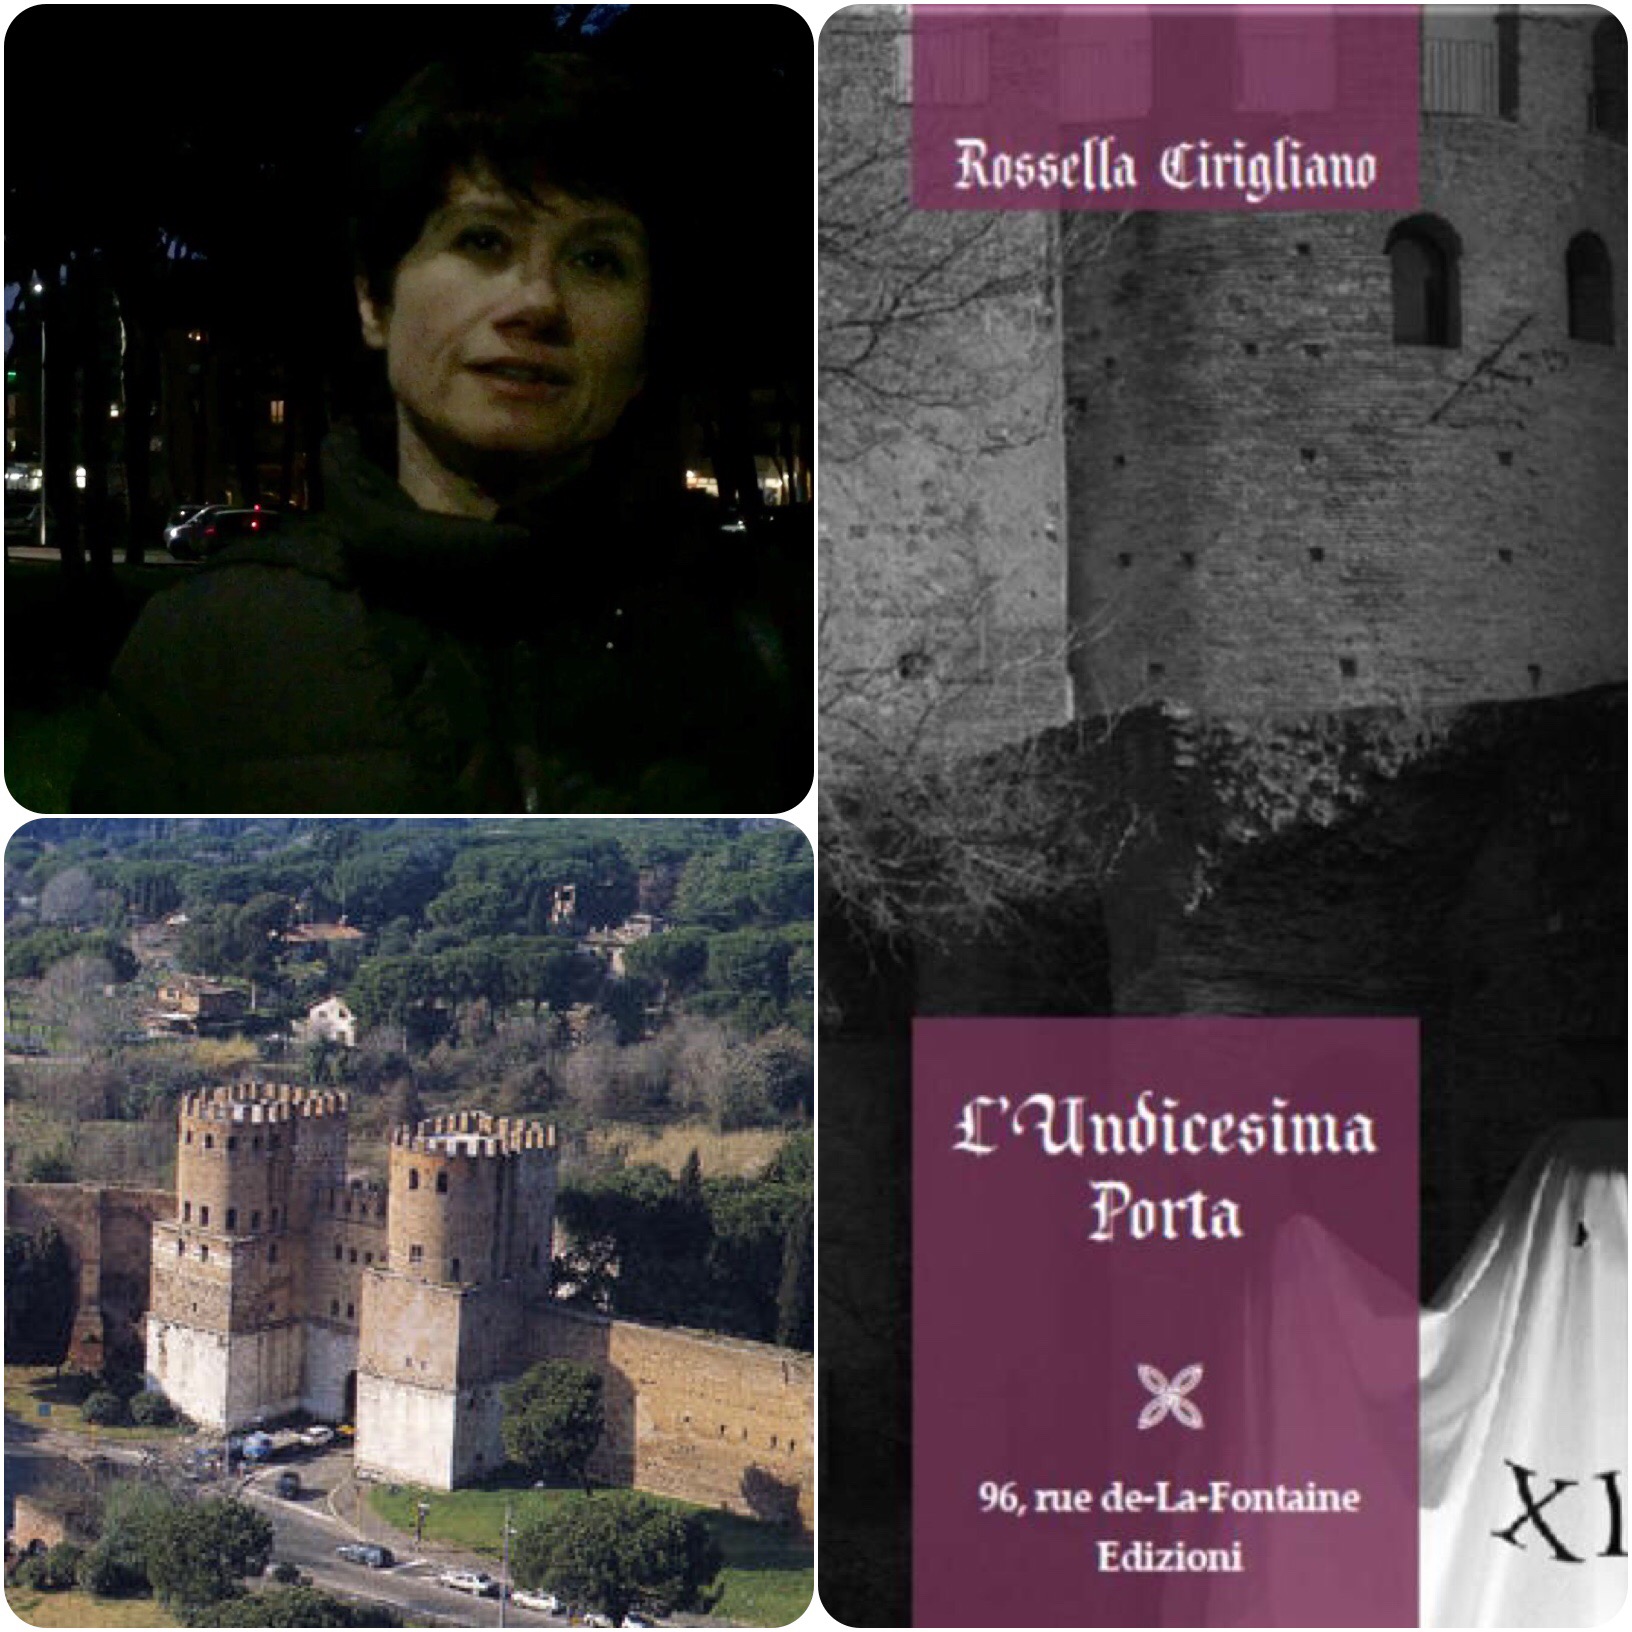 Incontro con gli autori: Rossella Cirigliano